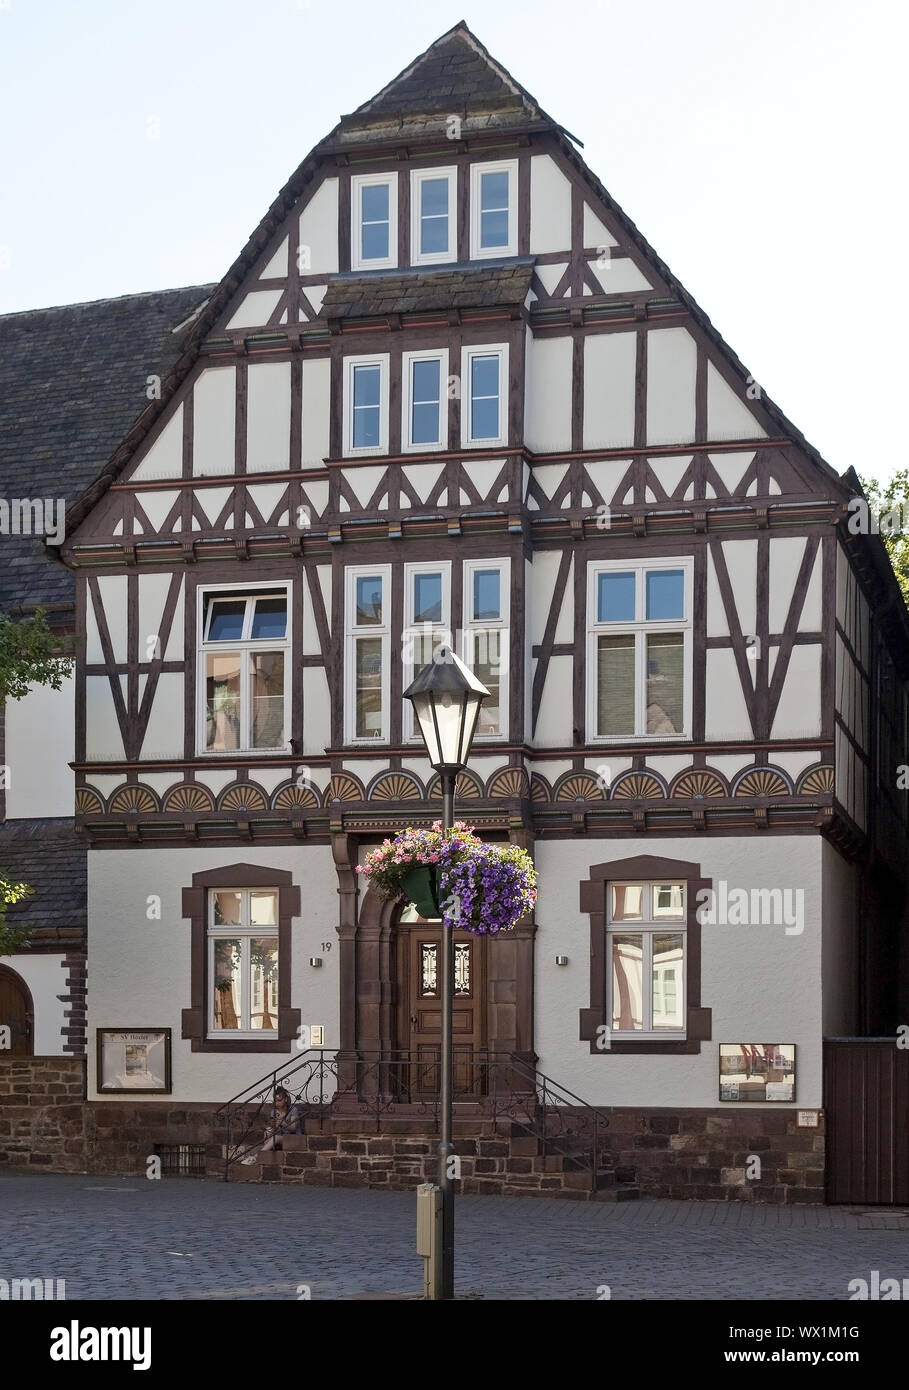 Maison à colombages historique, Vieille Ville, Hoexter, Weserbergland, à l'Est de la Westphalie, Allemagne, Europe Banque D'Images